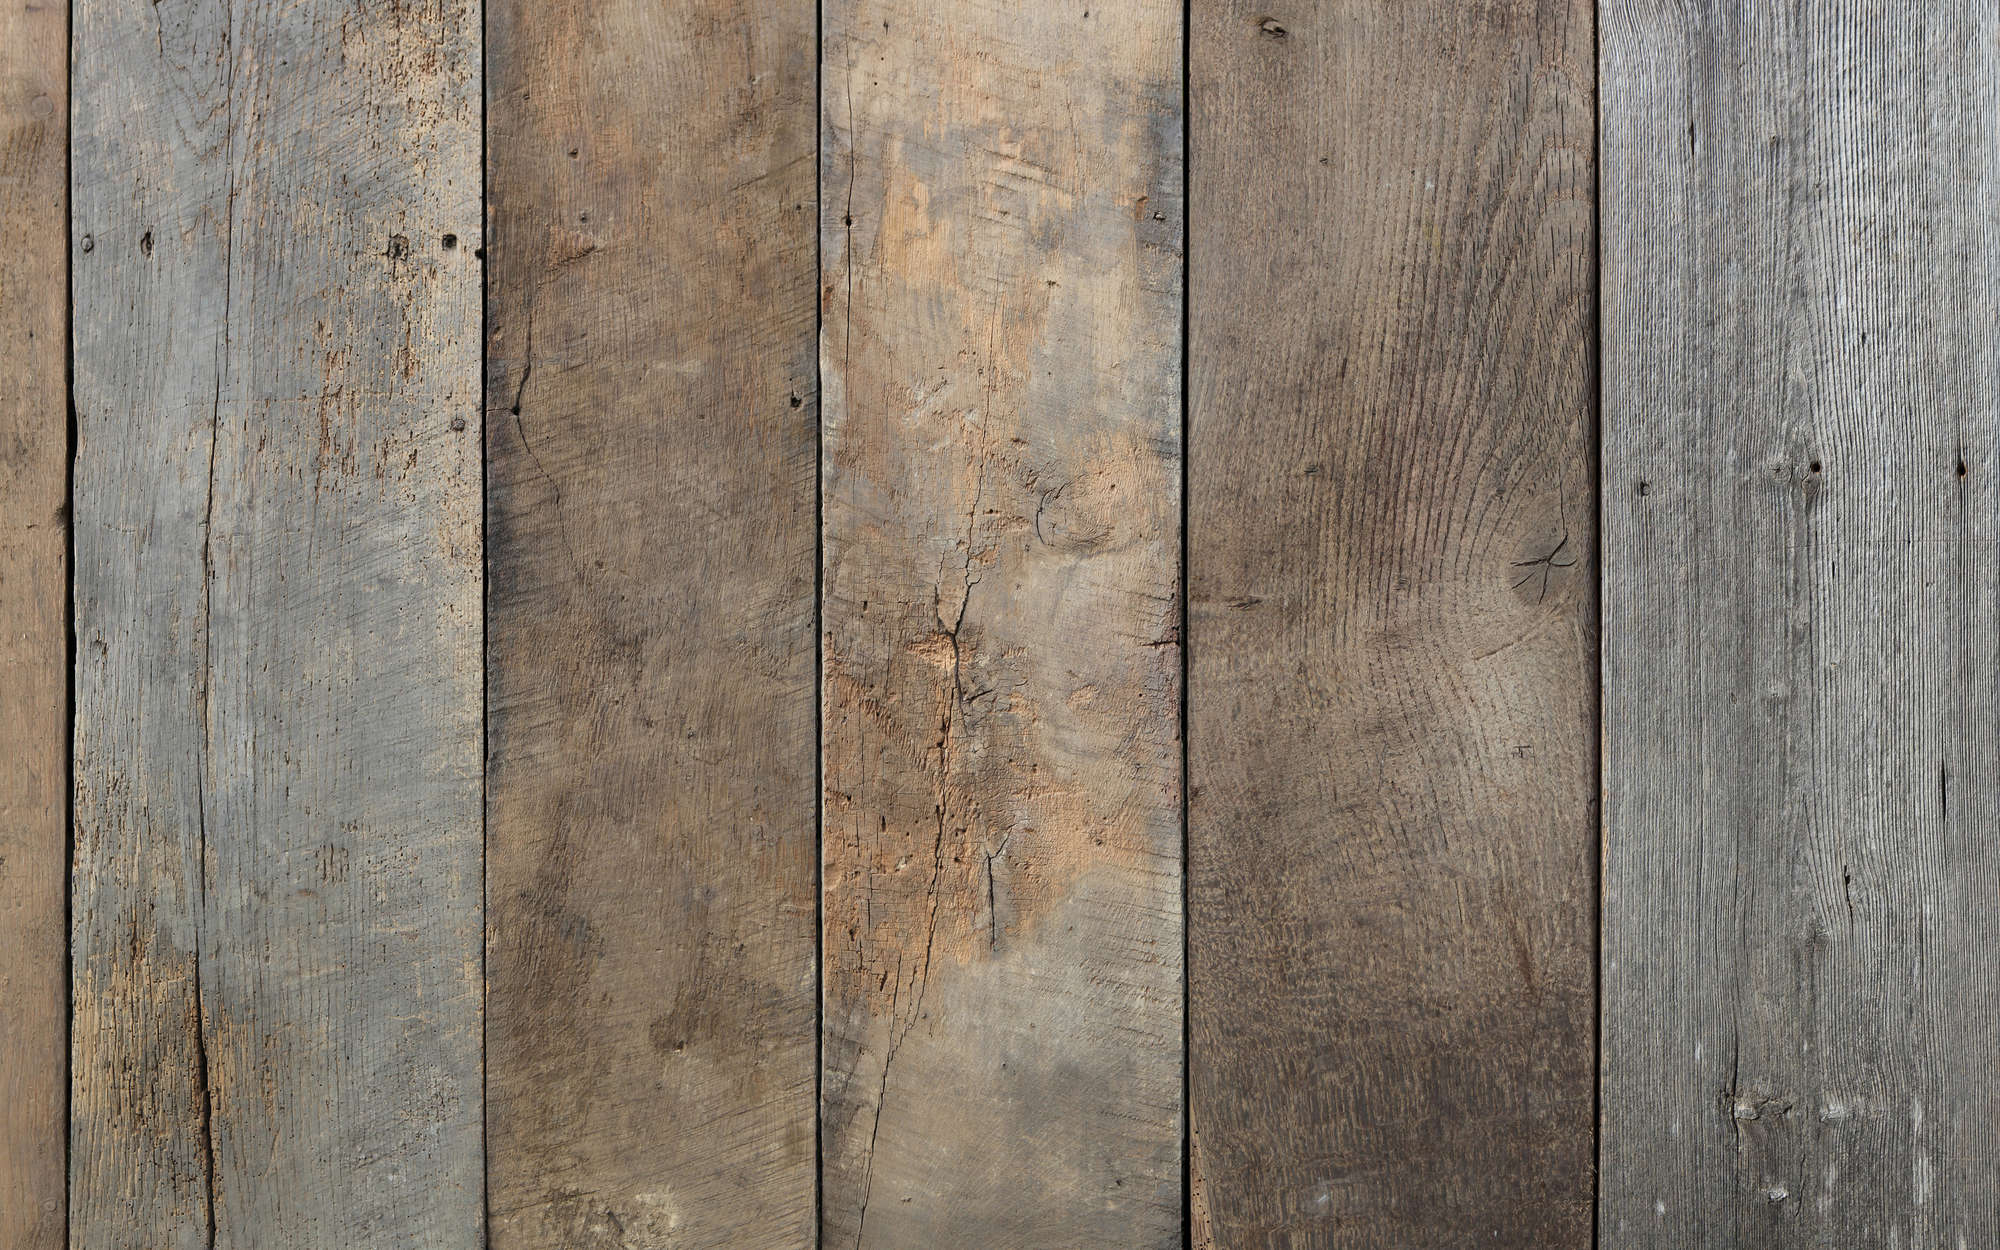             Oude houten vloerdelen muurschildering - Premium glad vlies
        